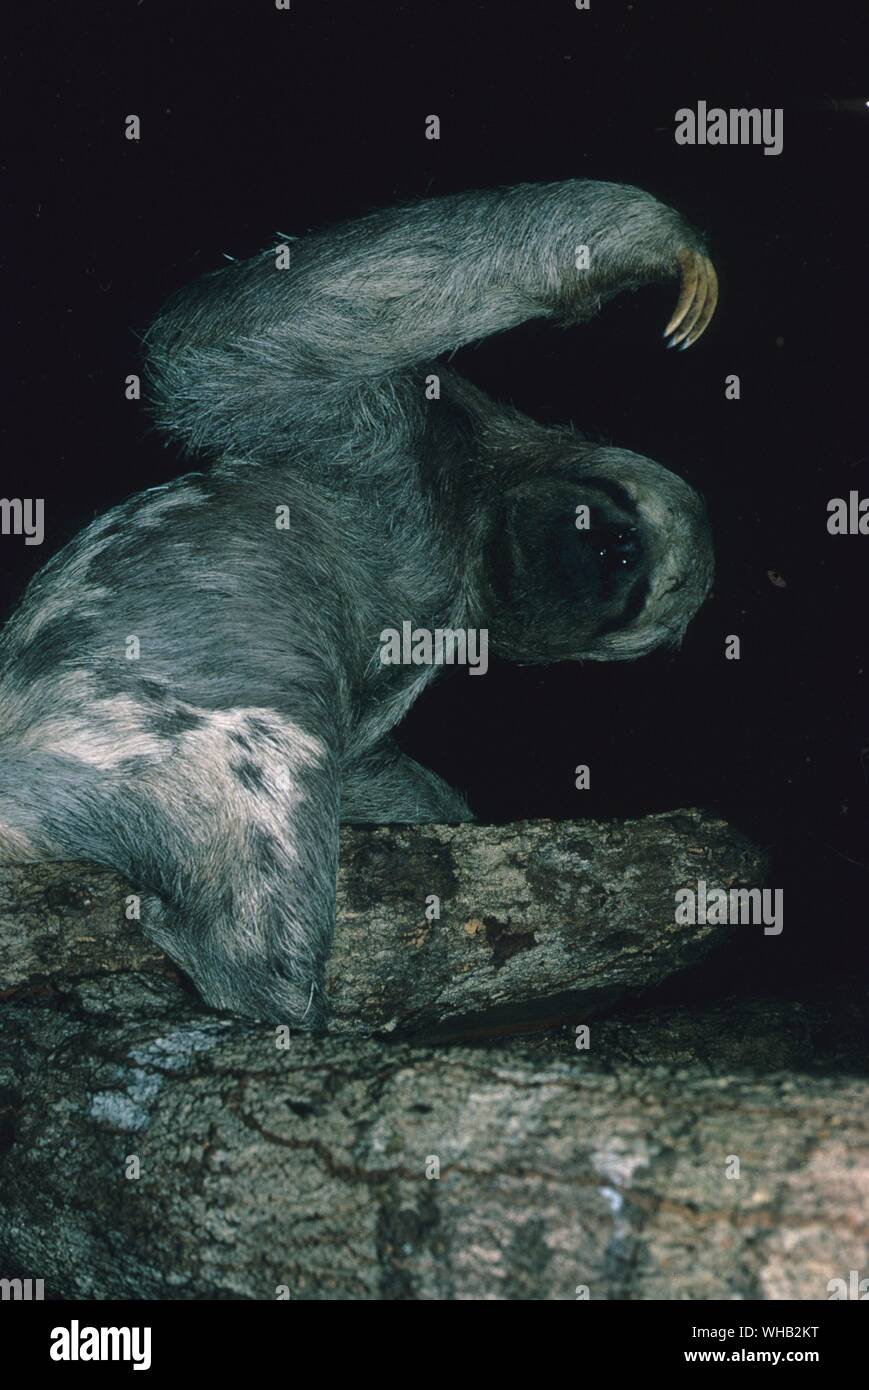 Brazil - three toed sloth. Stock Photo